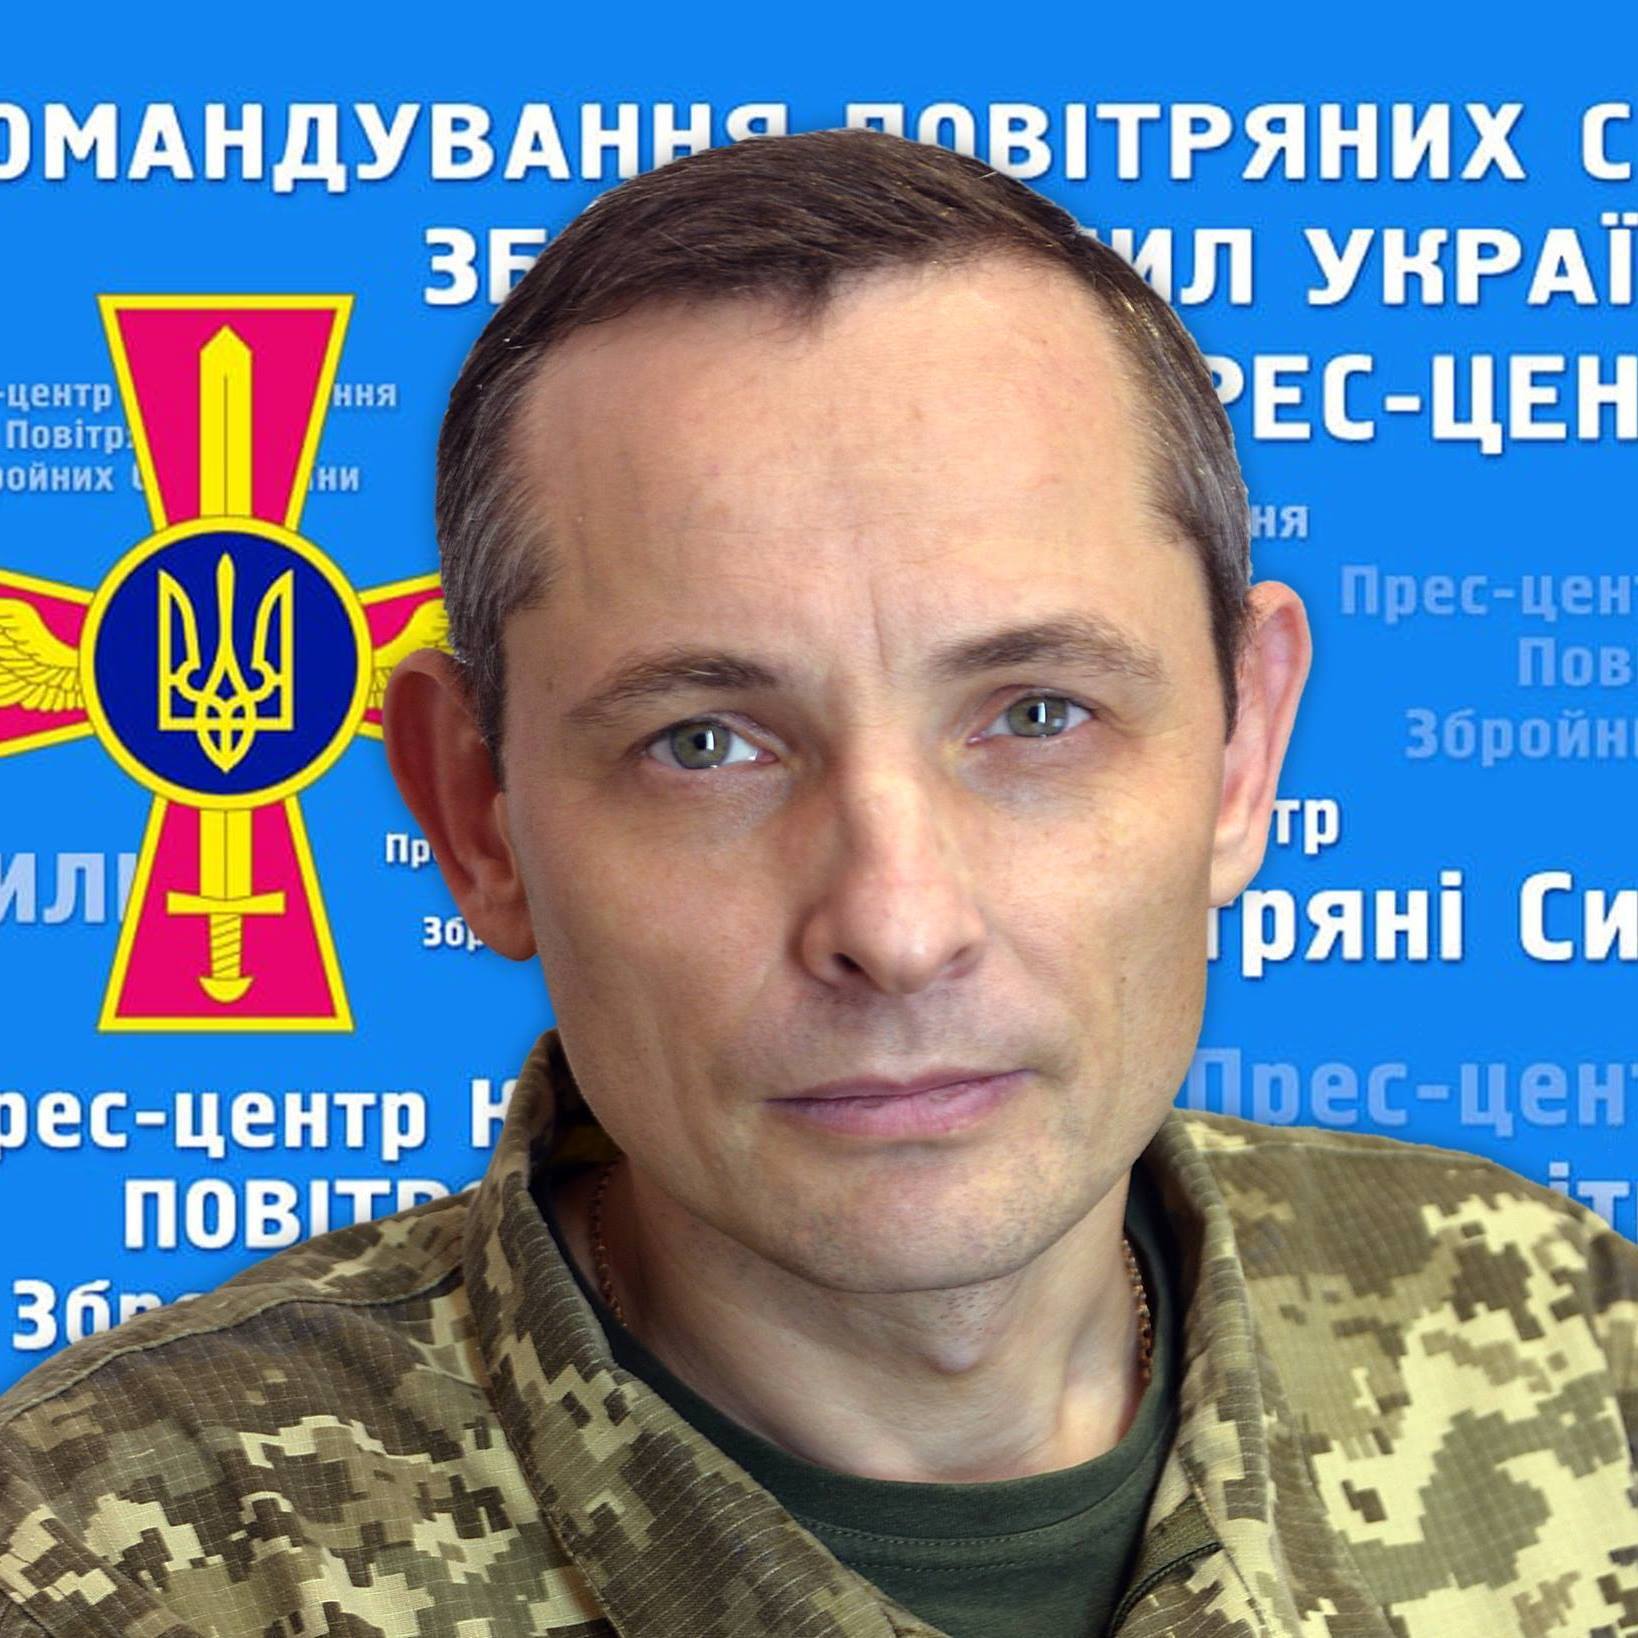 Спикер командования Воздушных сил ВС Украины Юрий Игнат